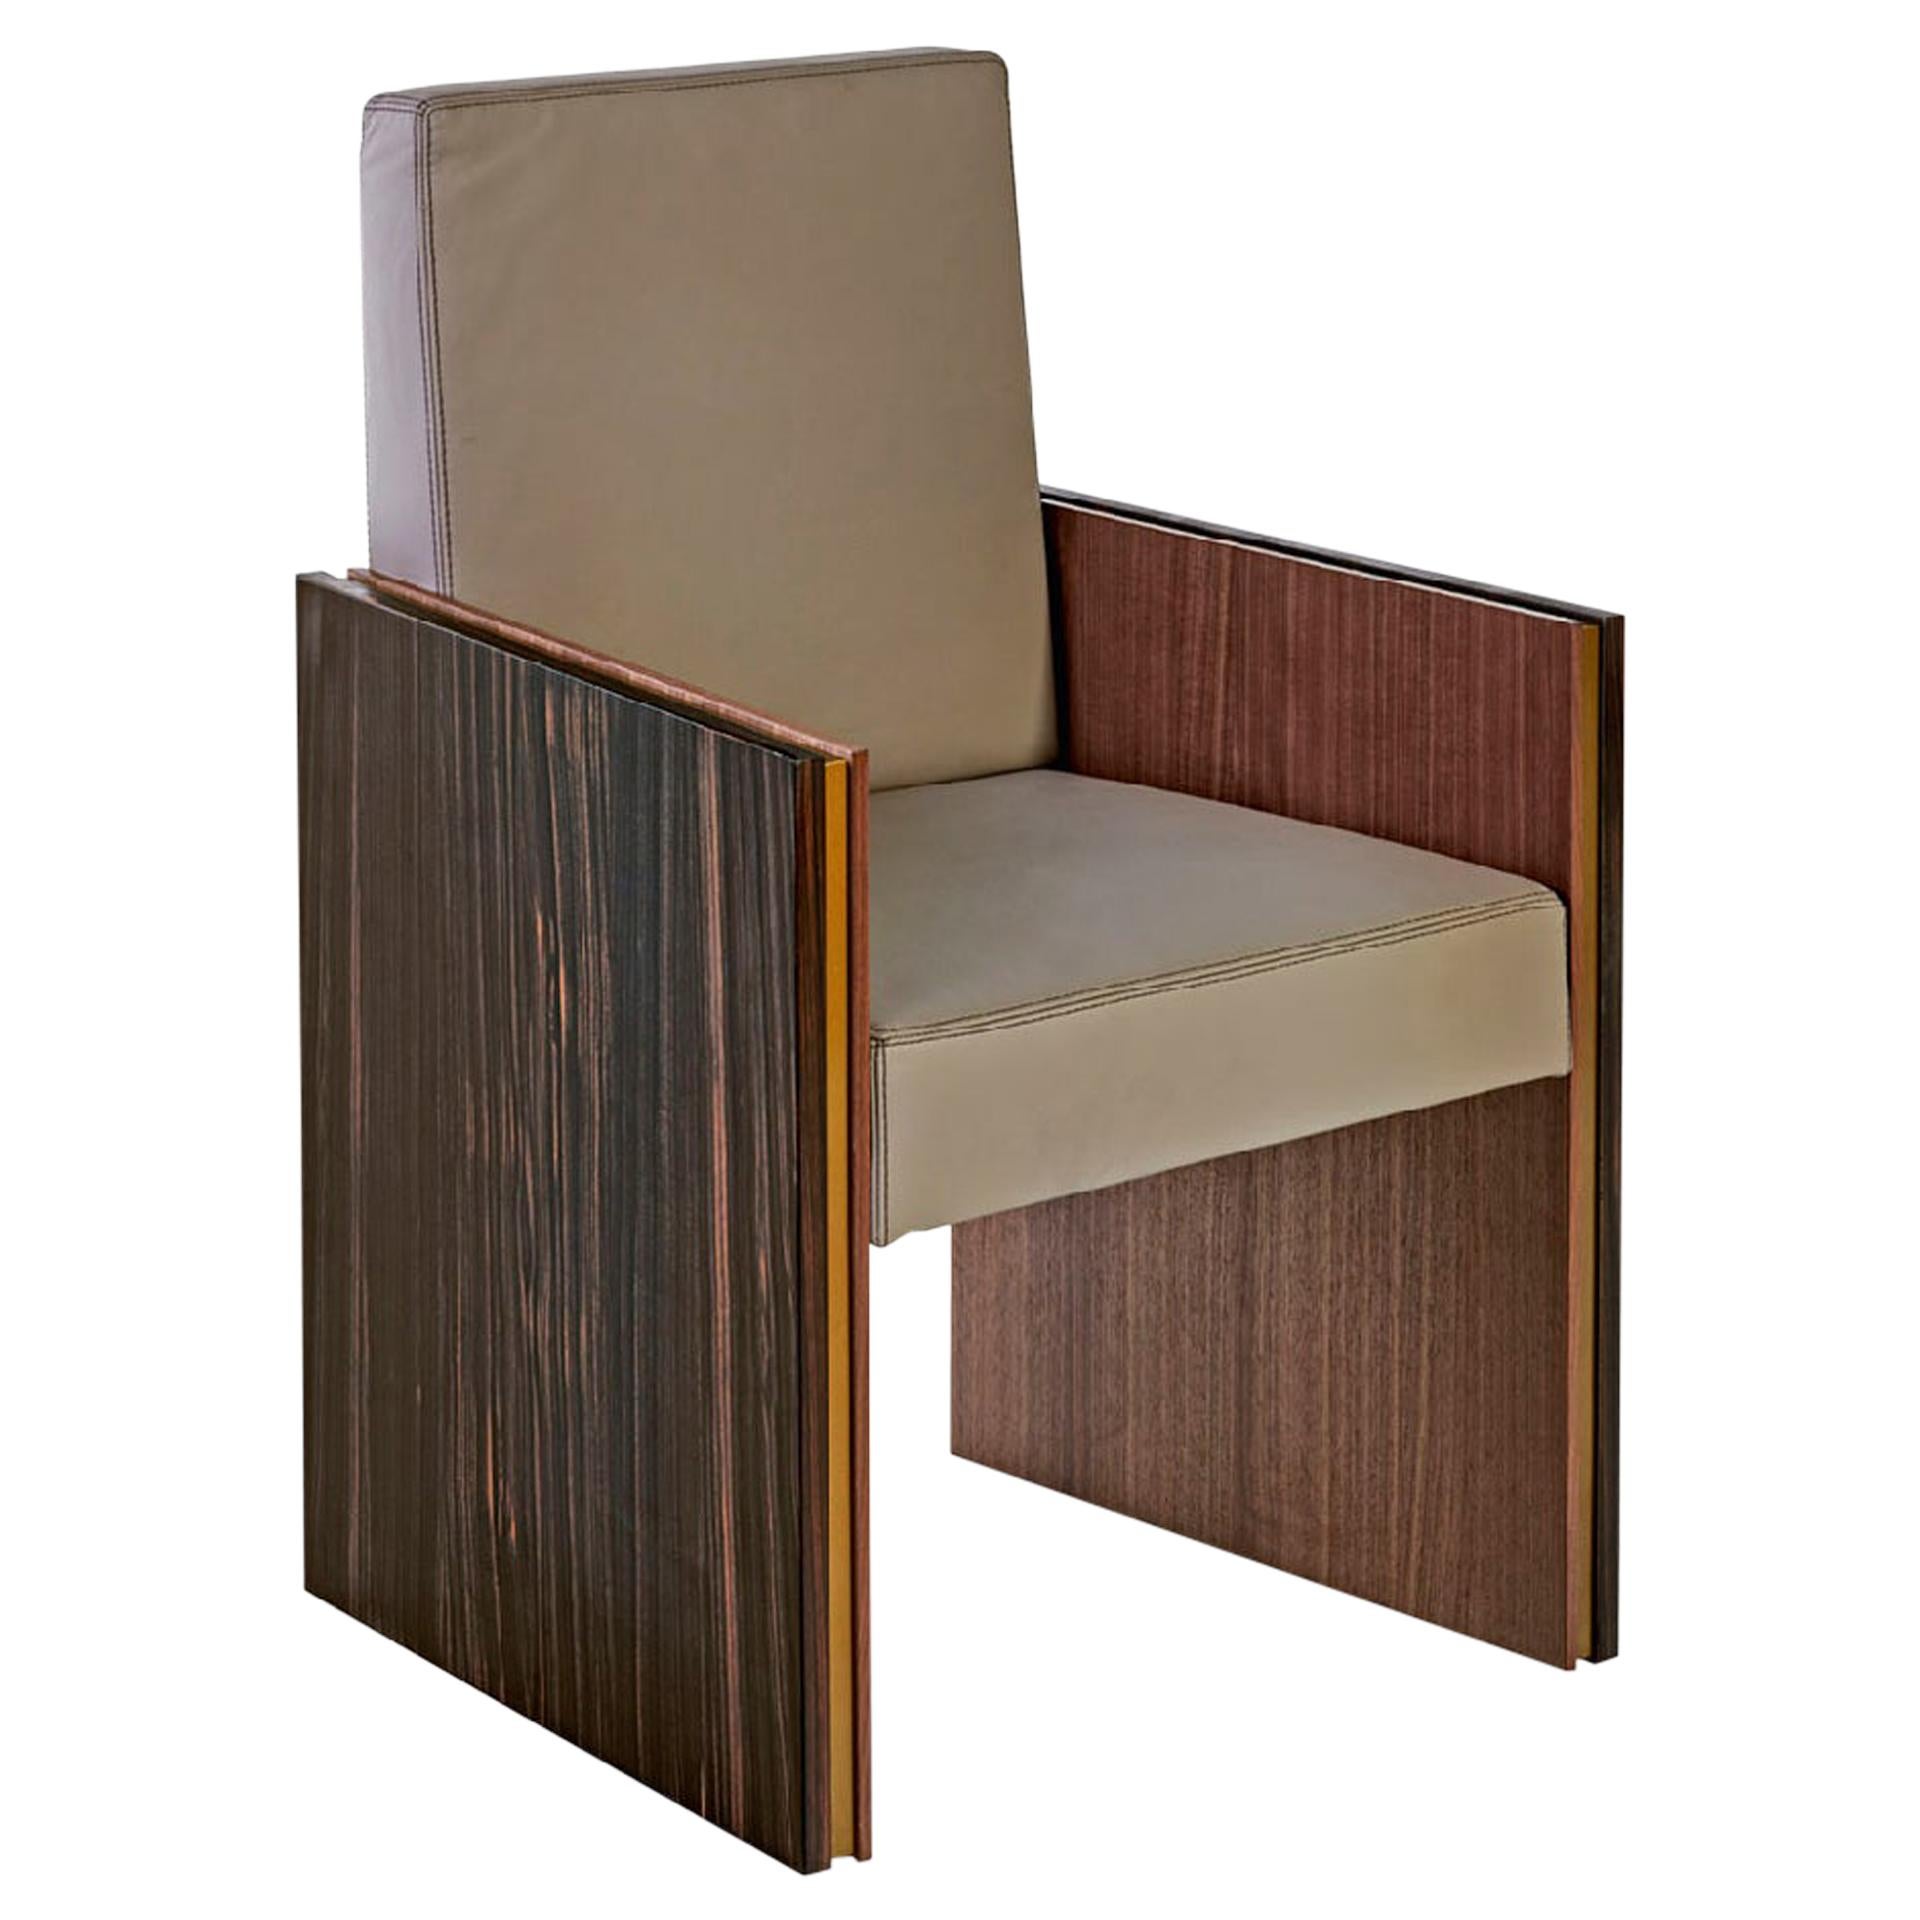 Cadre de la chaise en bois et panneaux latéraux avec trois couches de bois différentes